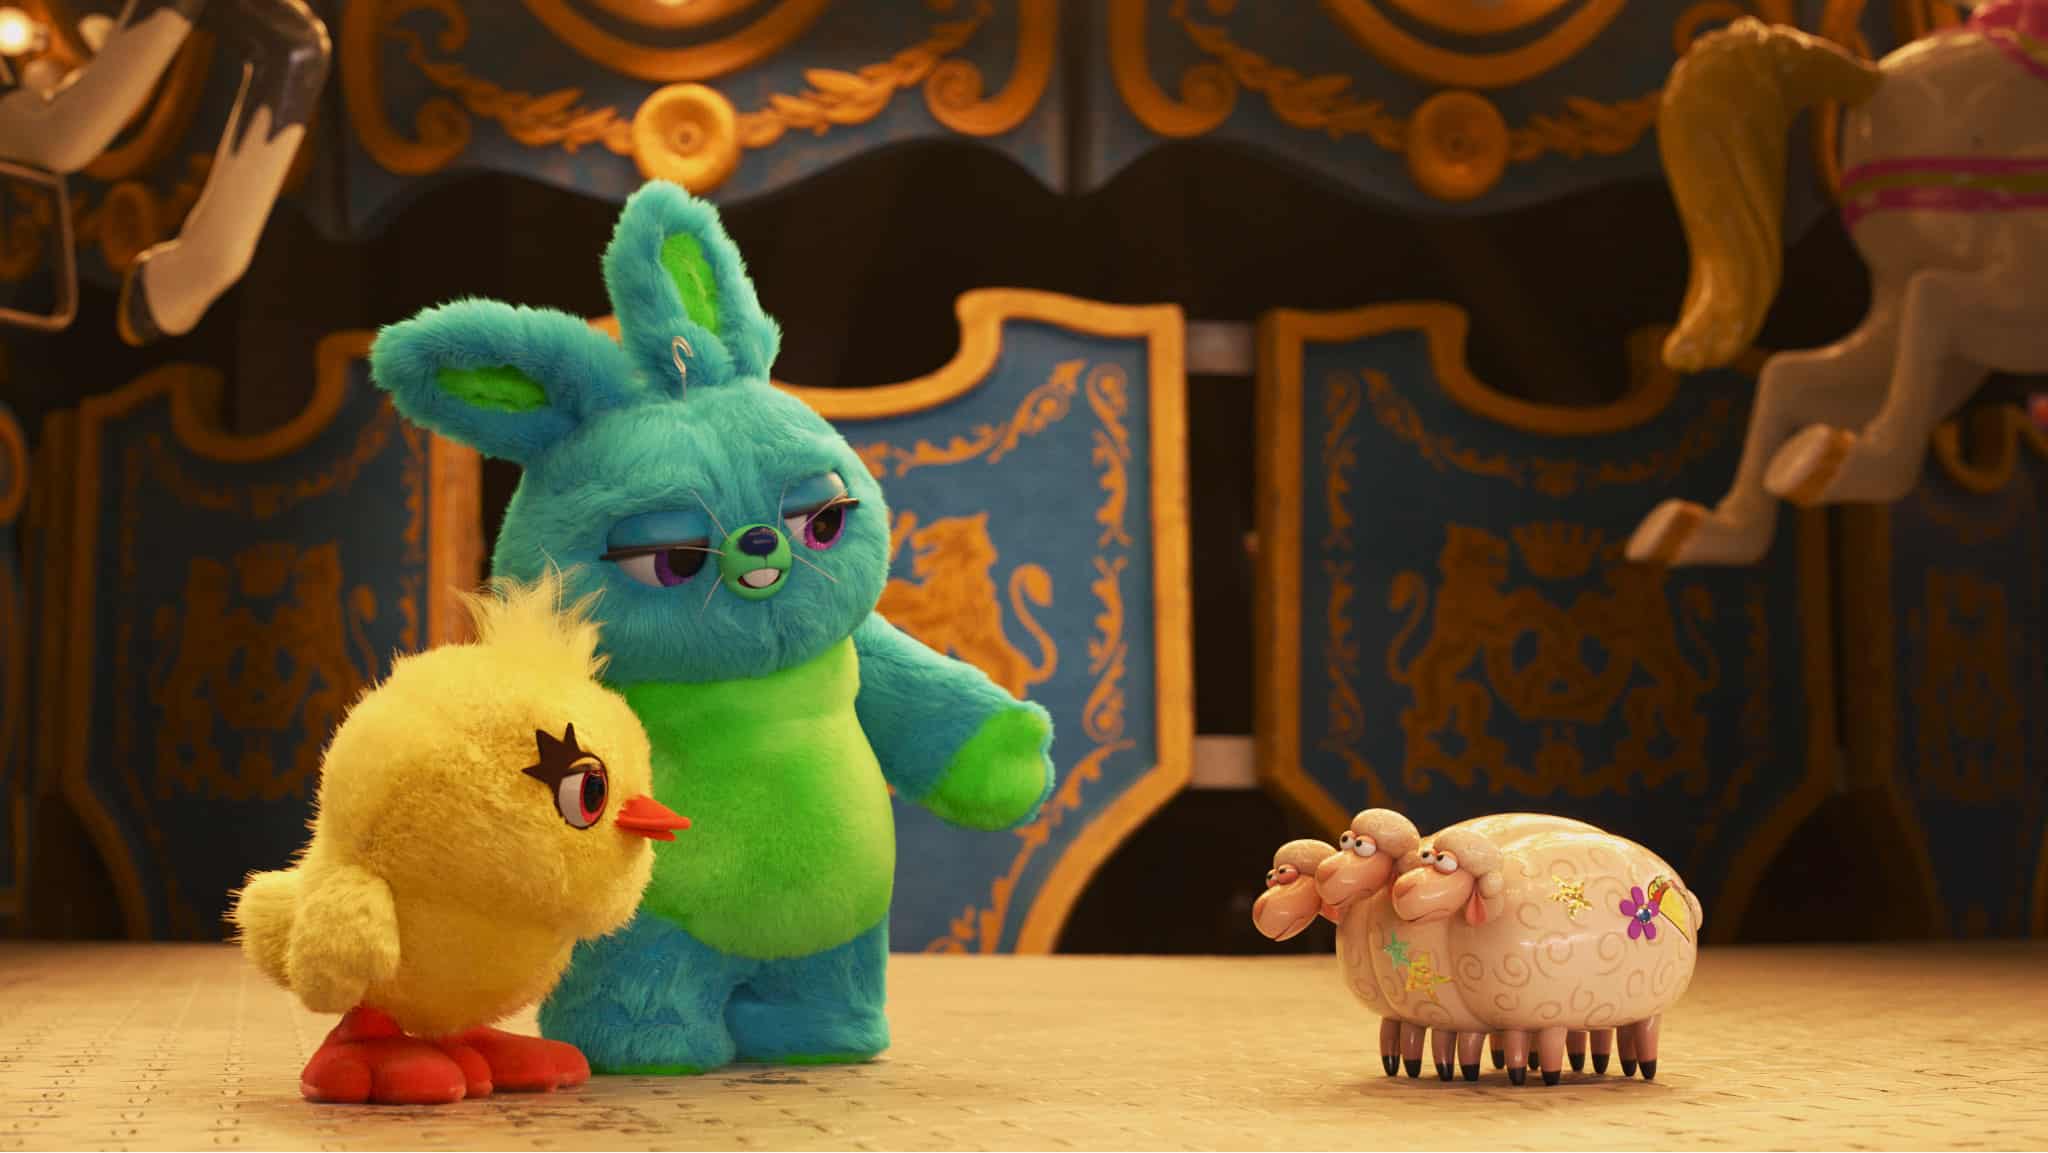 Disney+: in arrivo Pixar Popcorn, le mini storie adatte a tutta la famiglia